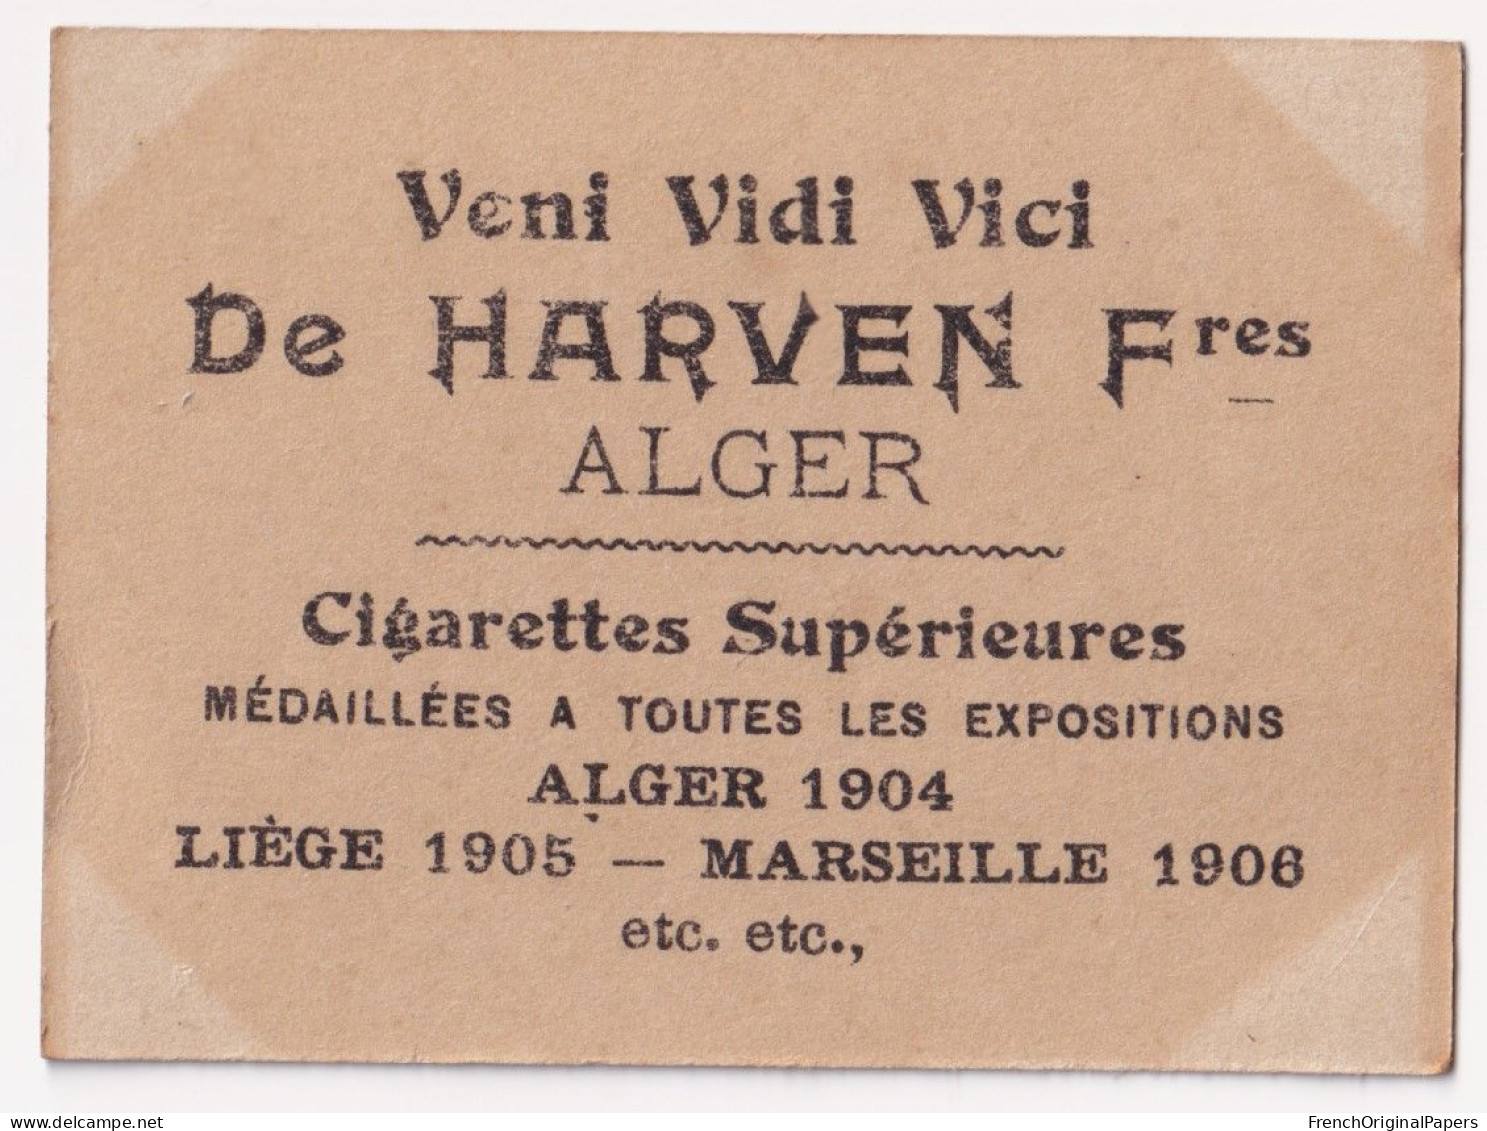 Dréna - Cigarettes De Harven 1910 Photo Femme Sexy Lady Pin-up Woman Nue Nude Nu Seins Nus Vintage Alger épée A62-9 - Autres Marques